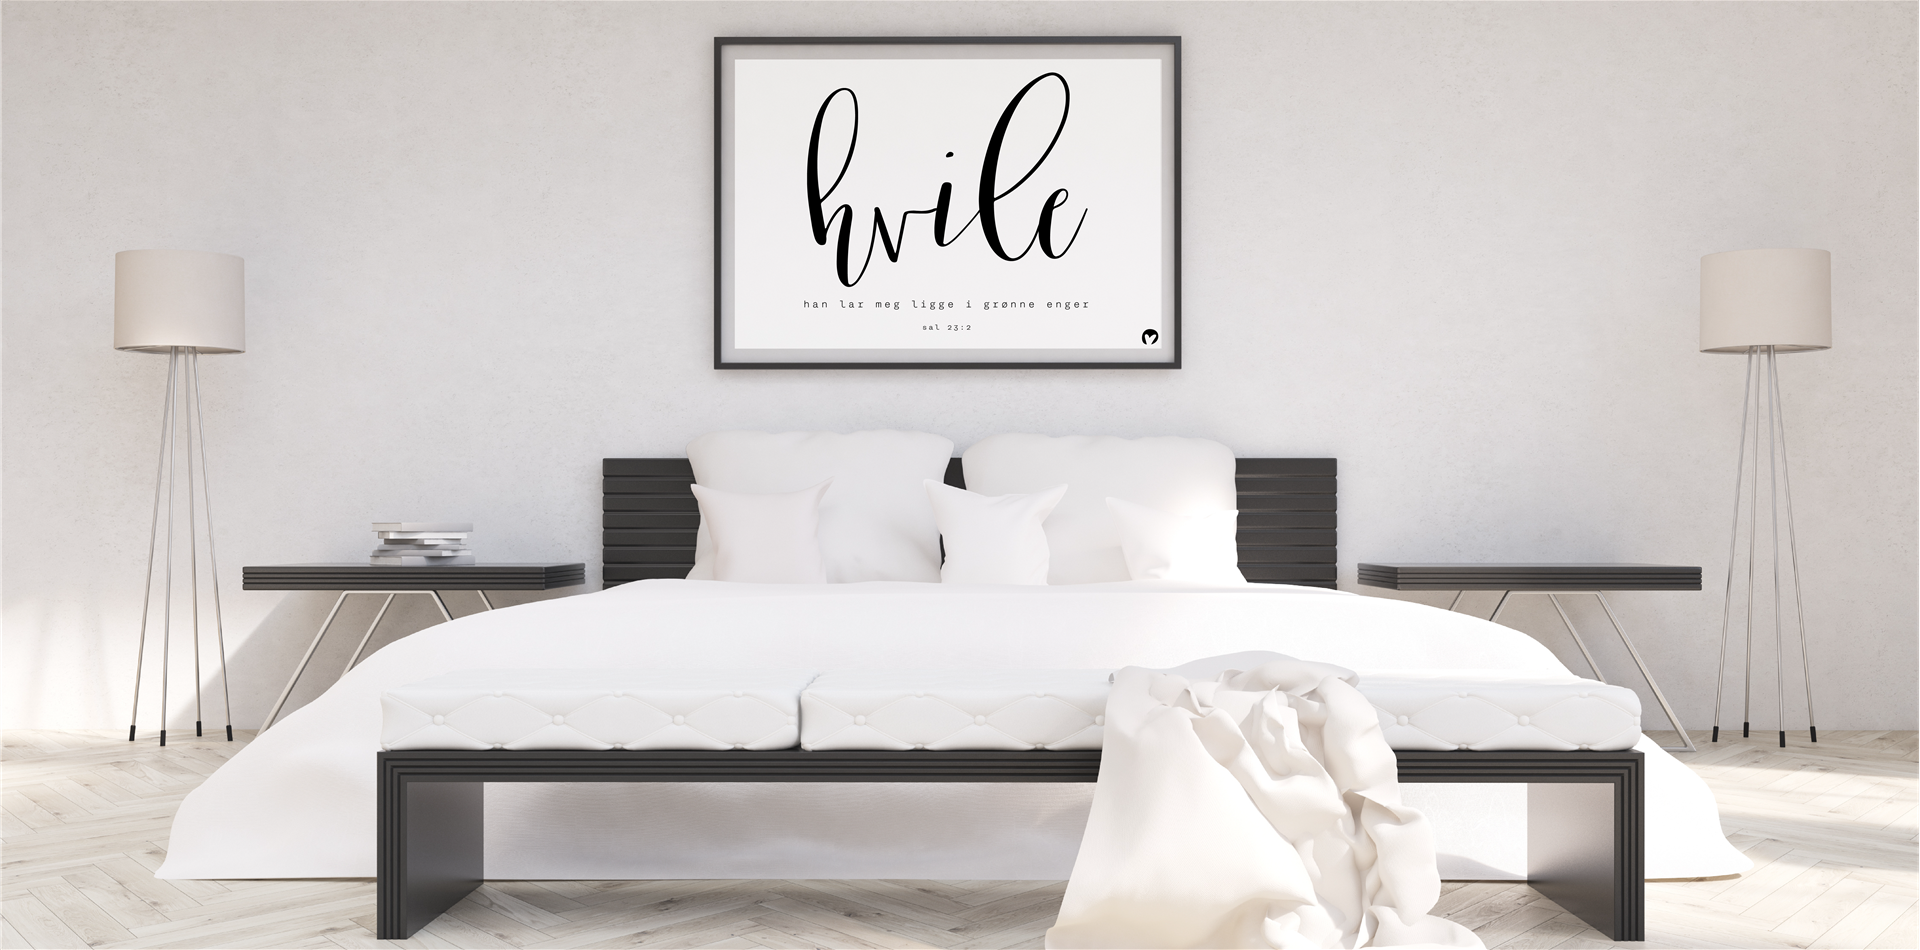 Stor plakat med teksten 'hvile' over ei seng